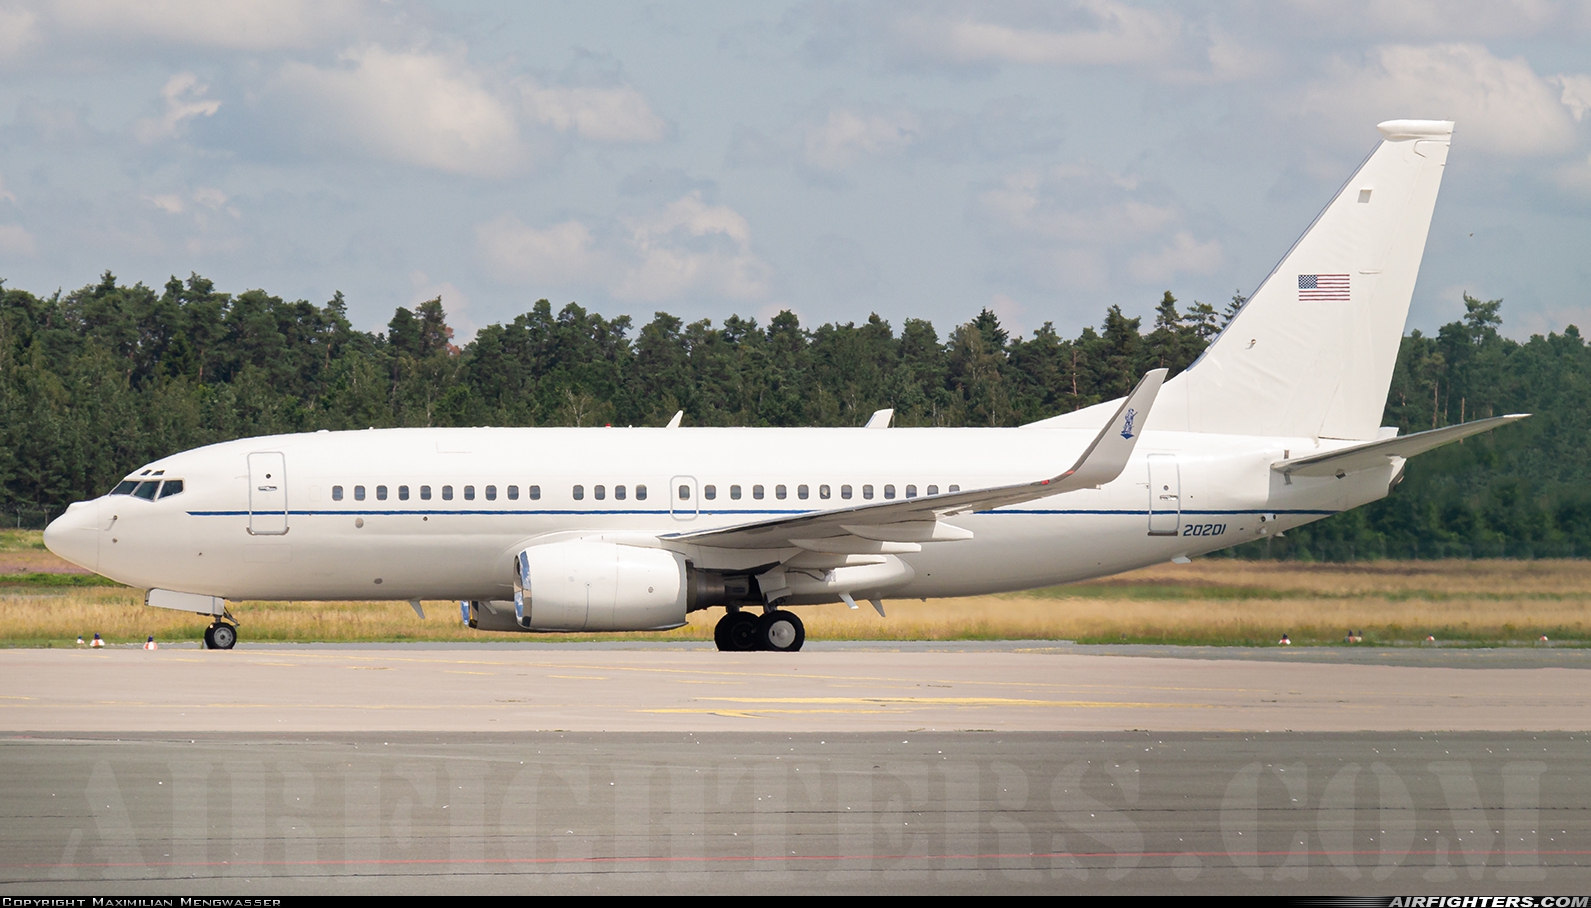 USA - Air Force Boeing C-40C (737-7CP BBJ) 02-0201 at Nuremberg (NUE / EDDN), Germany